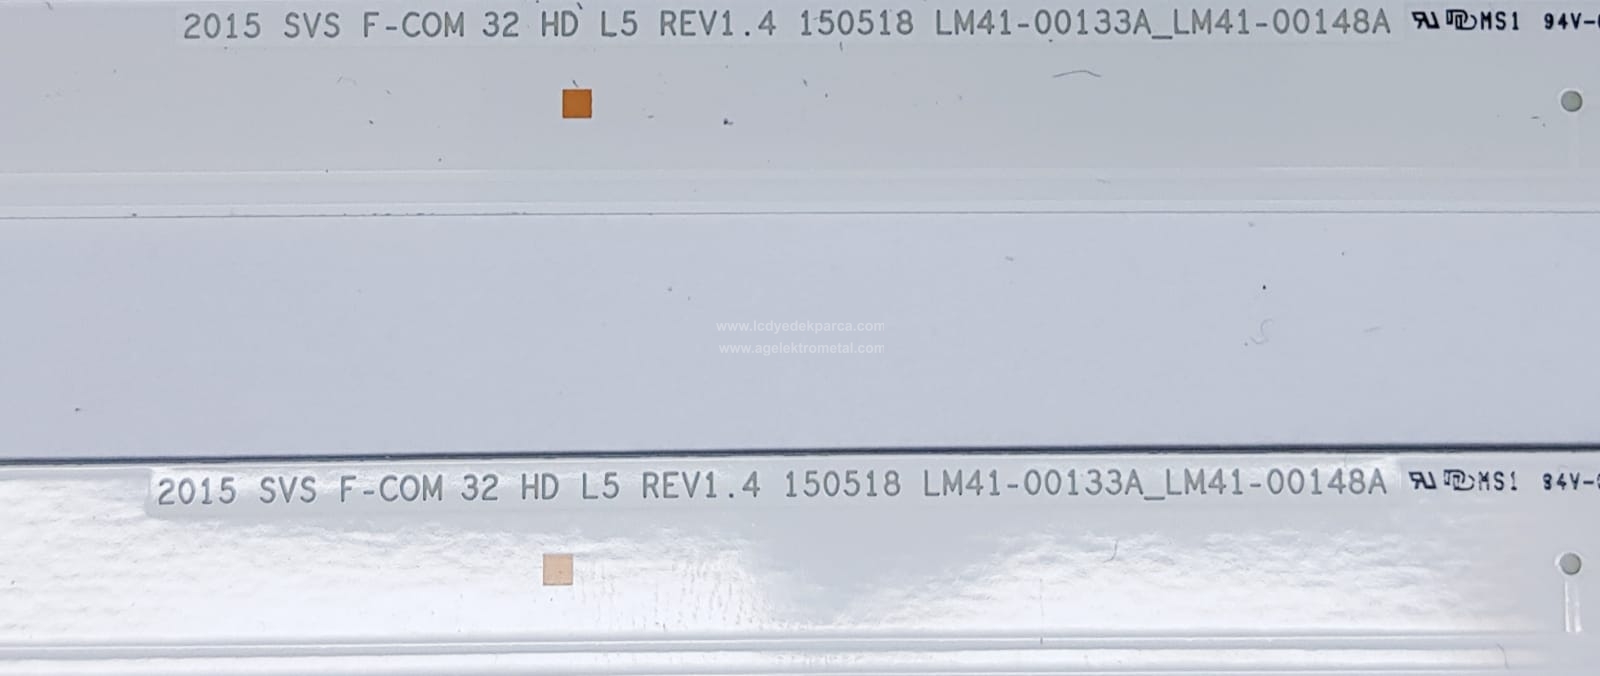 2015 SVS F-COM 32 HD L5 REV1.4 , 150518 , LM41-00133A_LM41-00148A , SAMSUNG , UE32J4003 , JJ032AGH4VD1087 , JJ032AGH-R1 , 2 ADET LED ÇUBUK